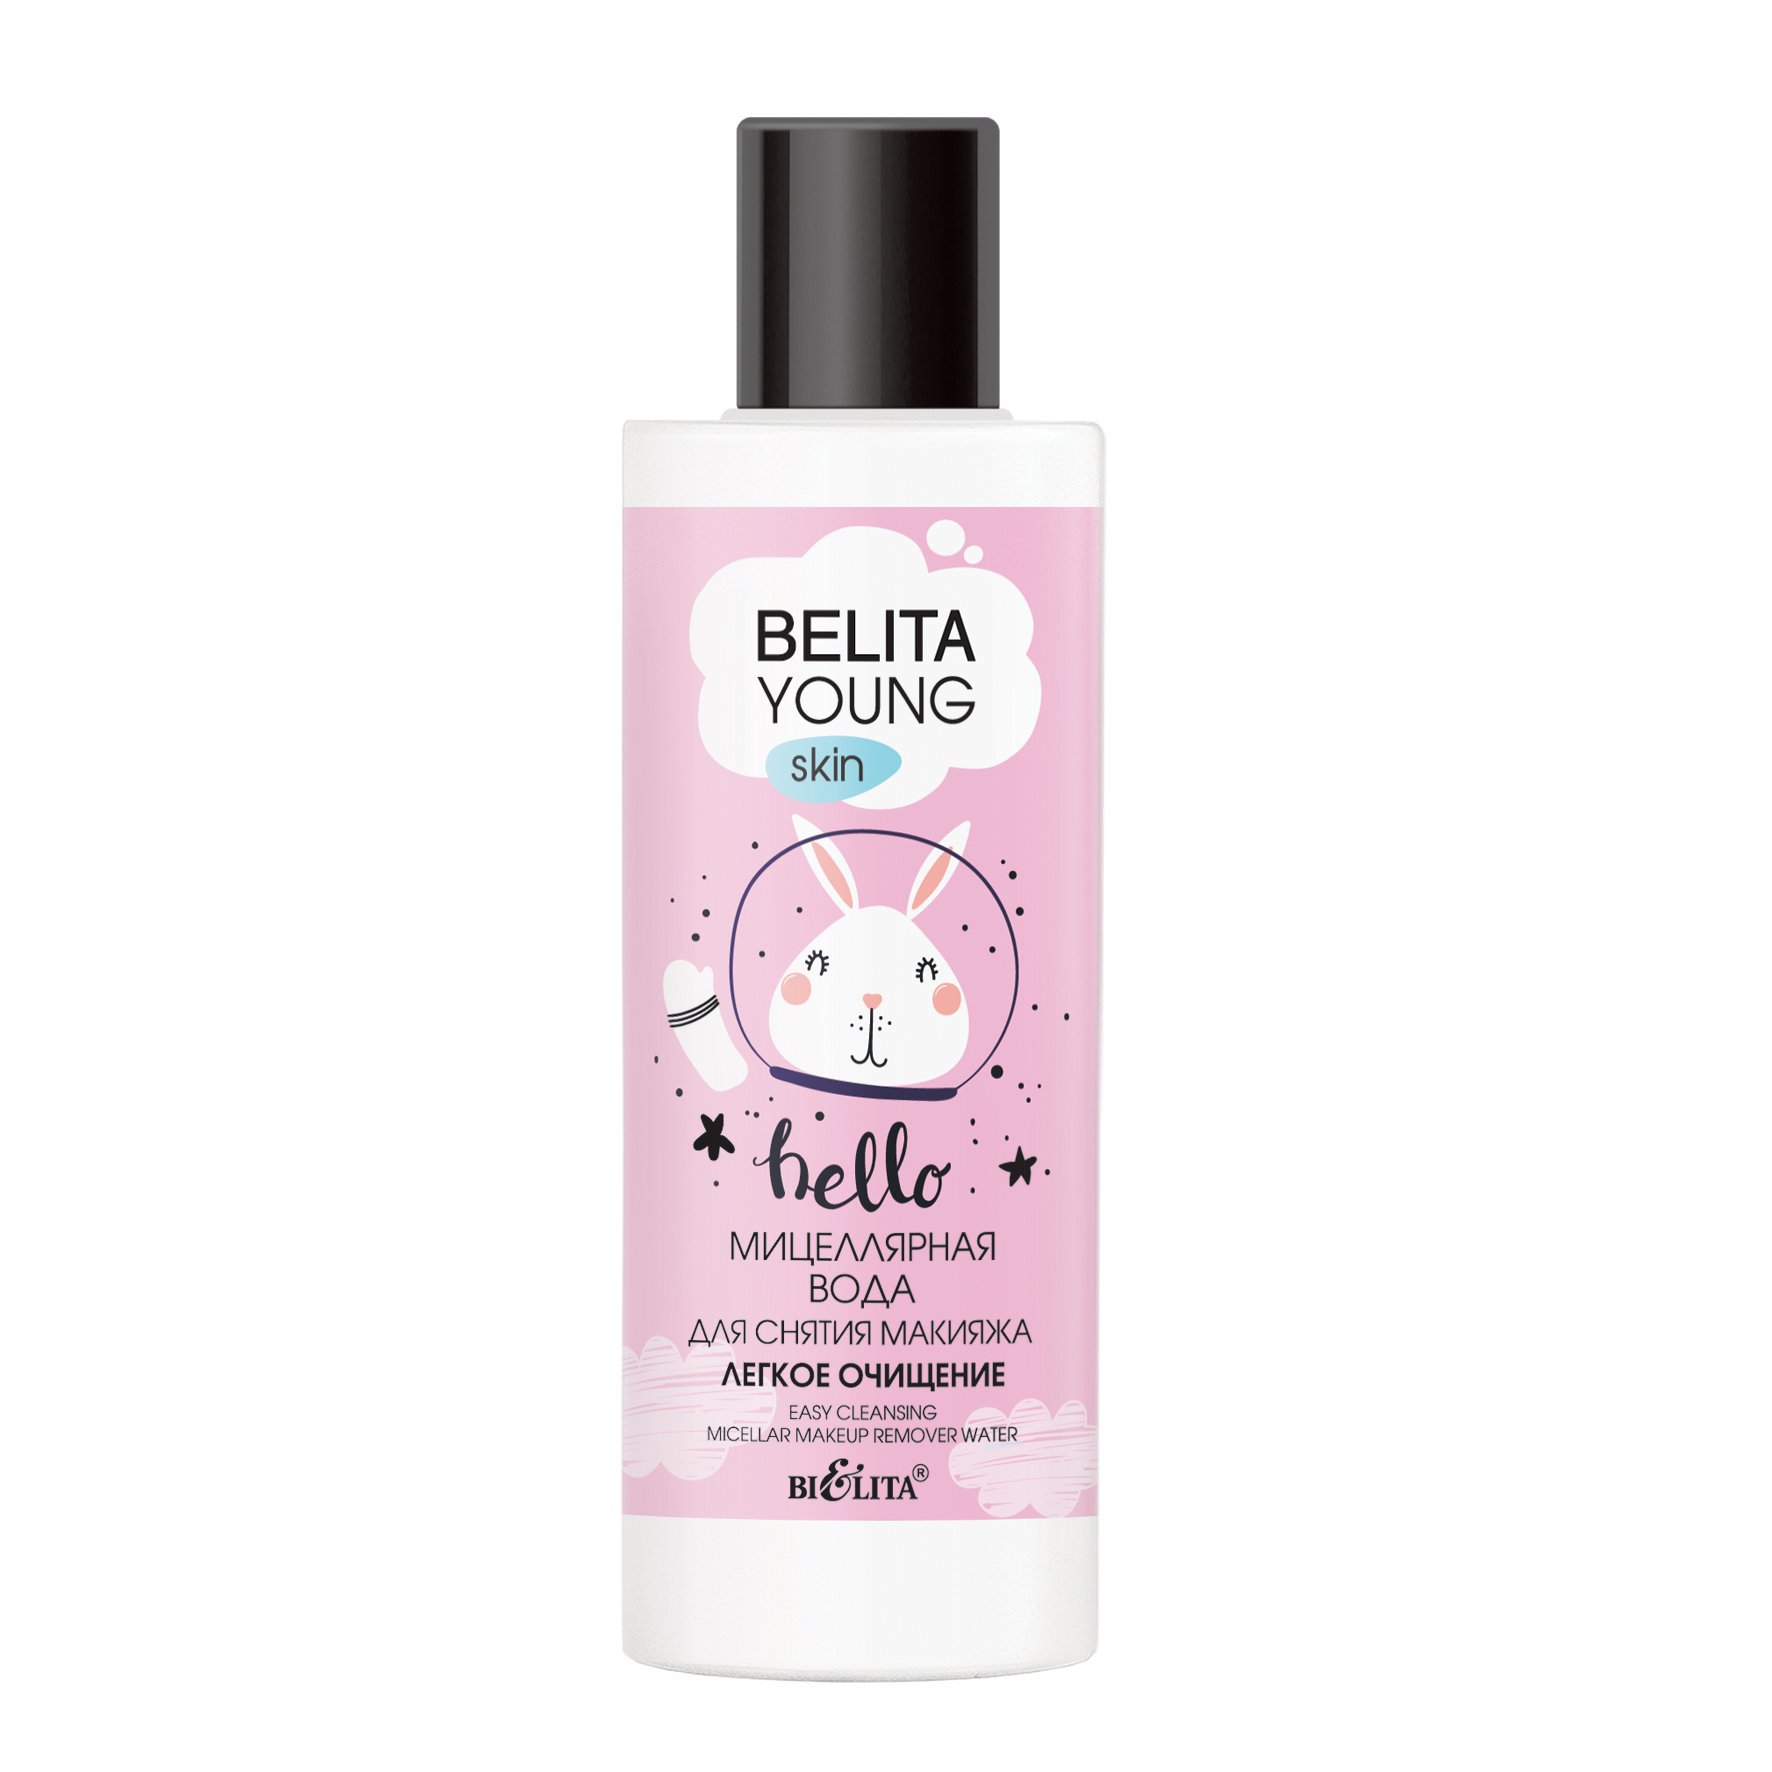 Міцелярна вода Bielita Belita Young Skin Легке очищення, 150 мл (14423) - фото 1